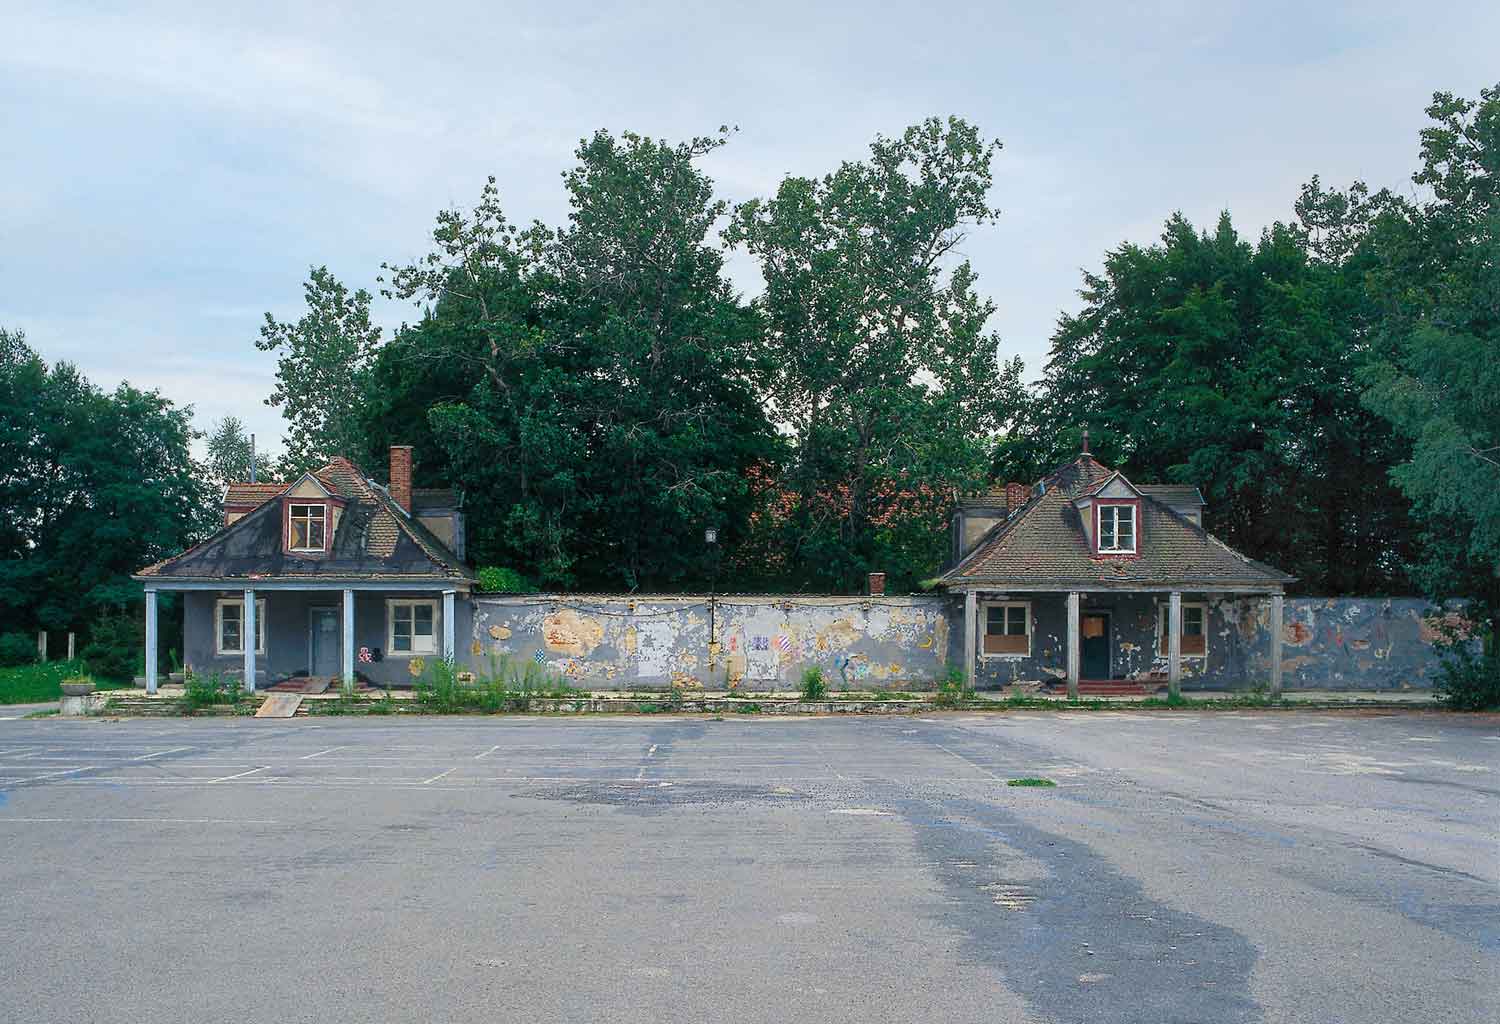 Foto, farbig, außen: Frontalansicht der grau getünchten Gebäude mit zahlreichen Schäden am Außenputz.